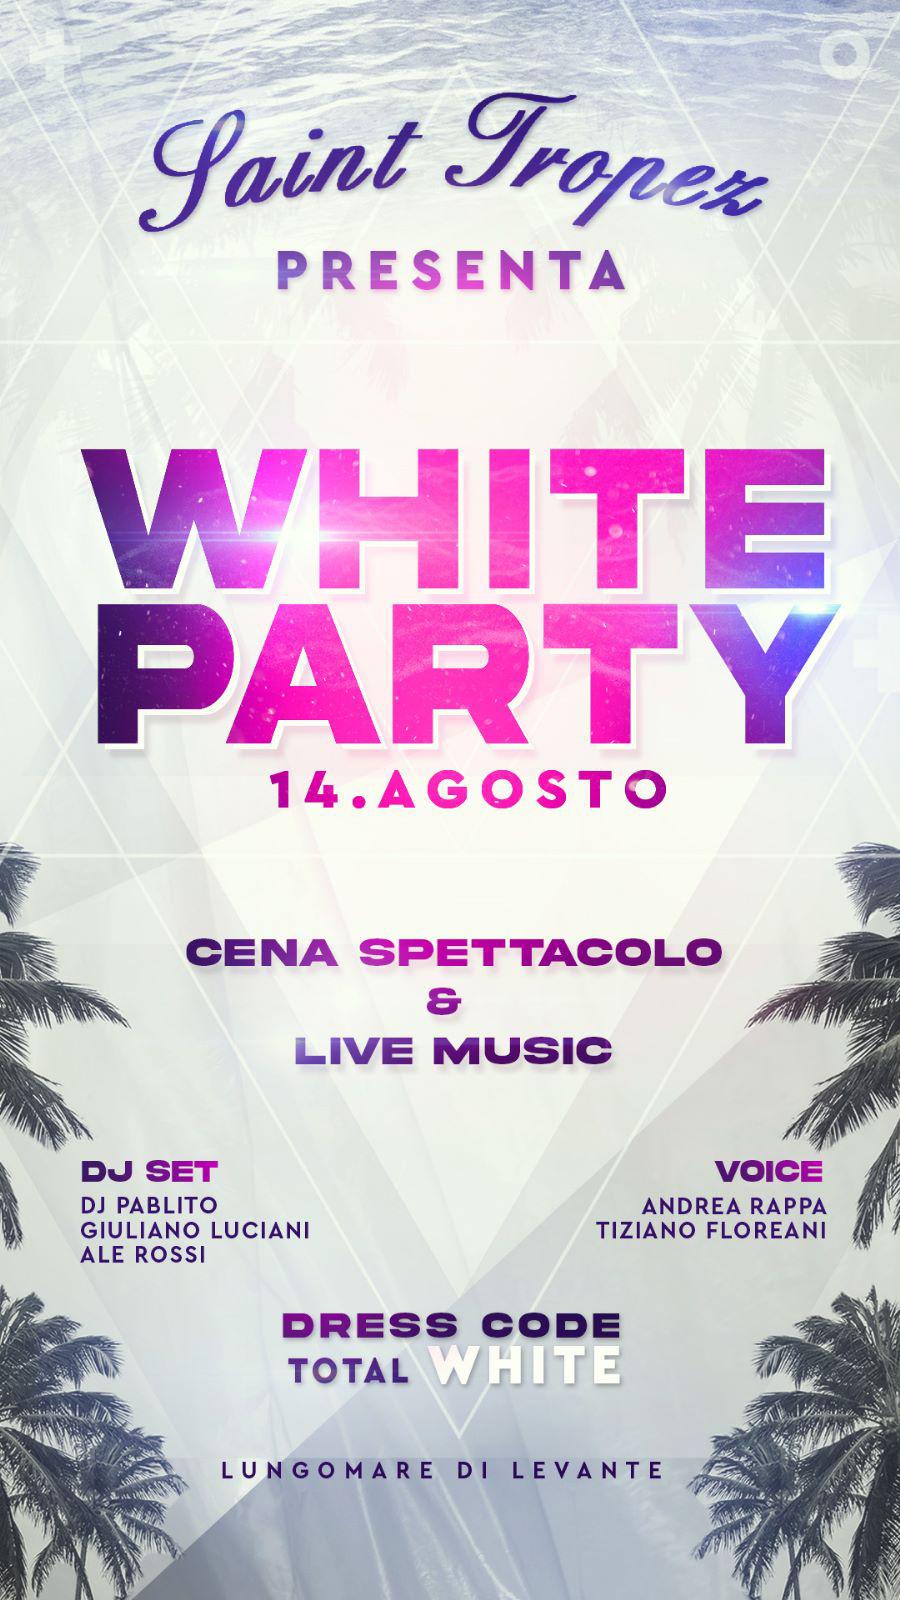 Saint Tropez Fregene Lunedi 14 agosto White Party